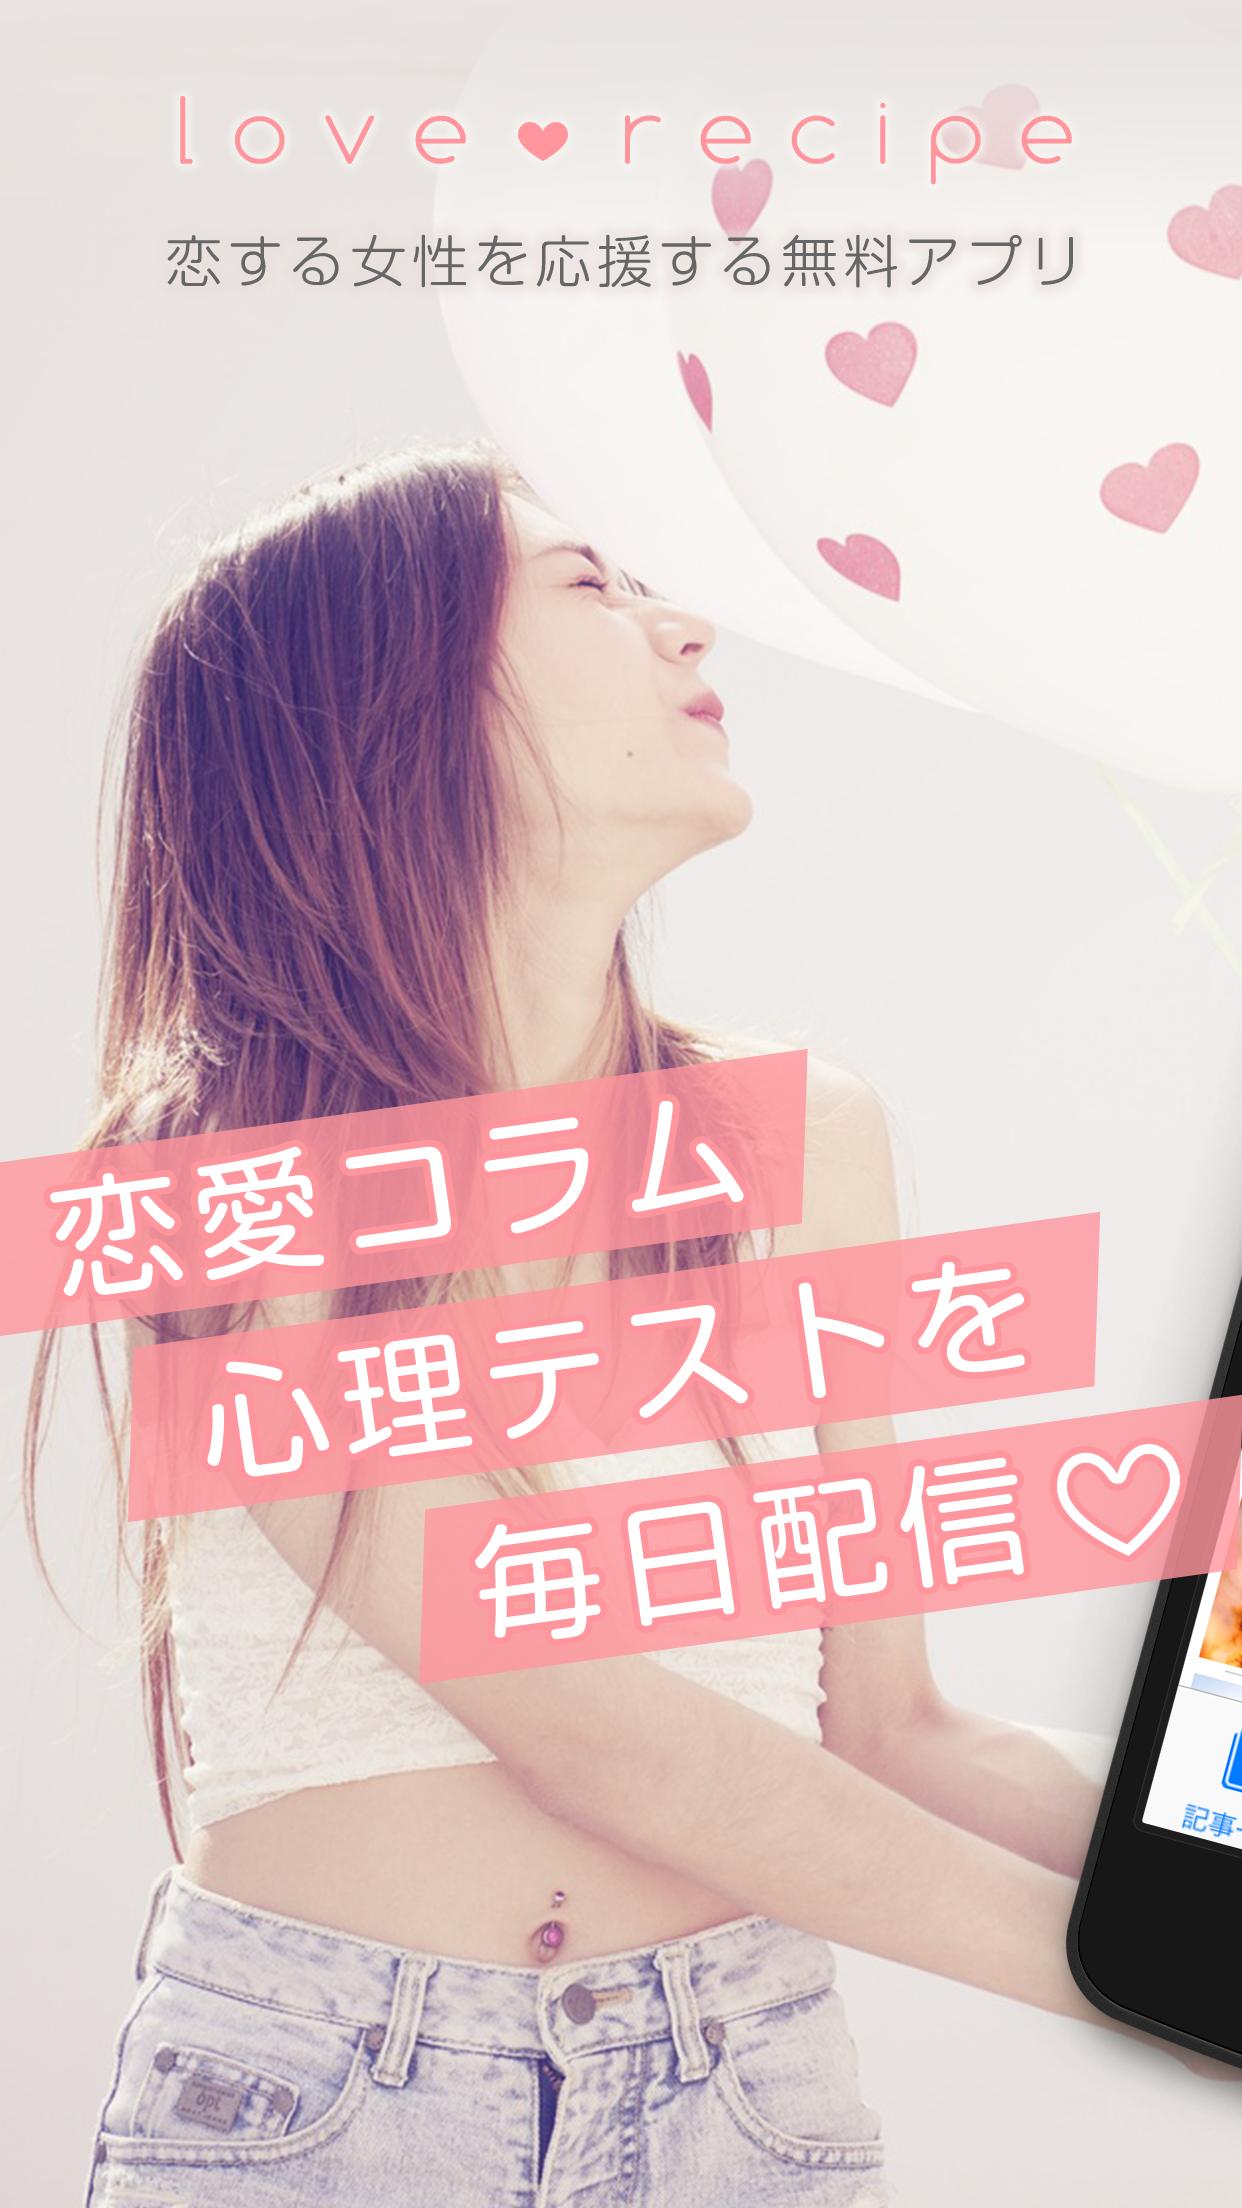 恋愛コラム 診断心理テスト 性コラム 女子向け無料ニュースアプリ Love Recipe 恋愛レシピ For Android Apk Download